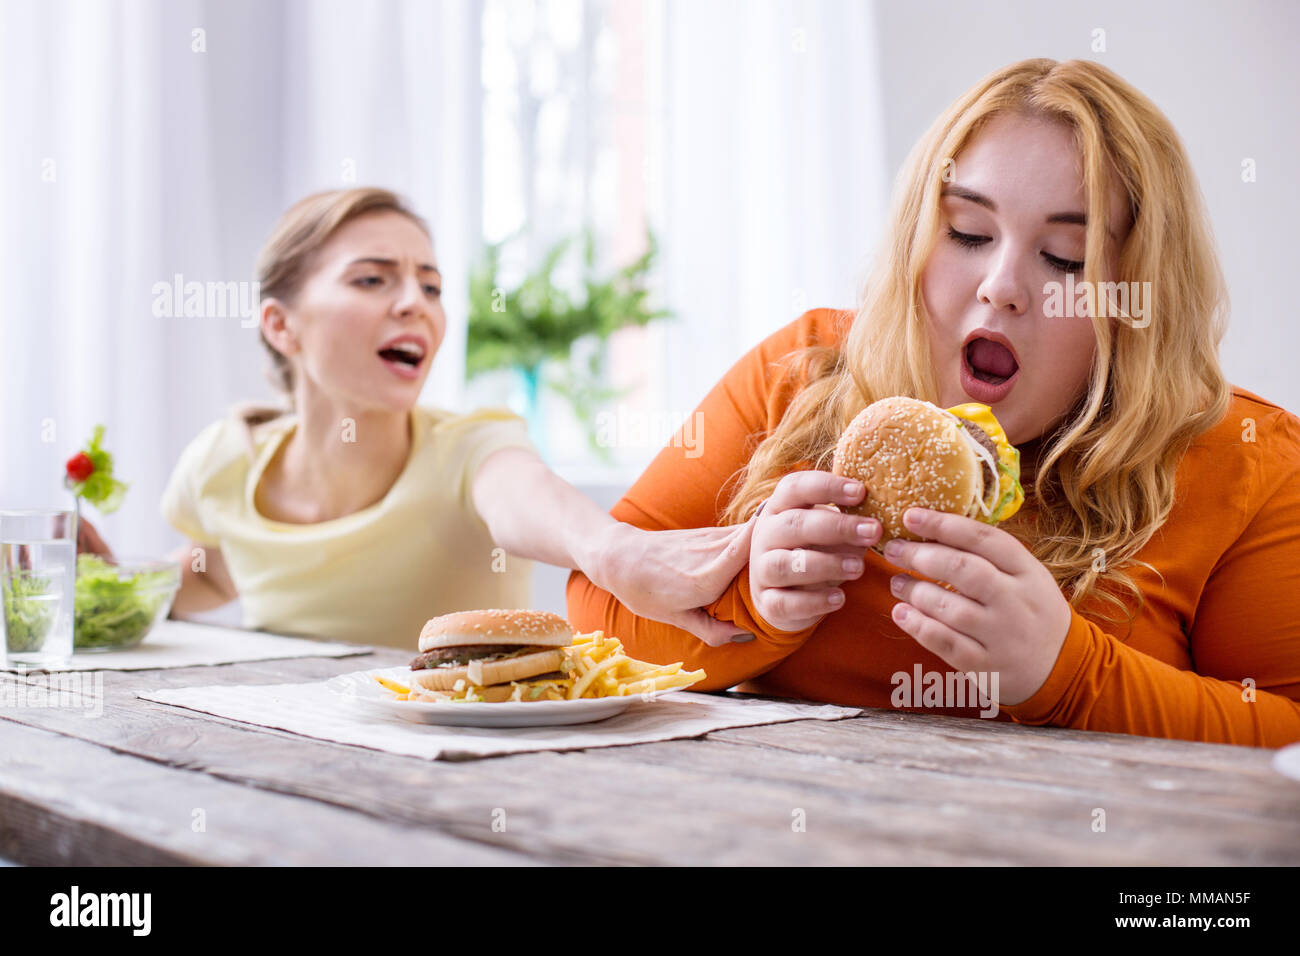 satisfied-fat-woman-eating-a-sandwich-MMAN5F.jpg